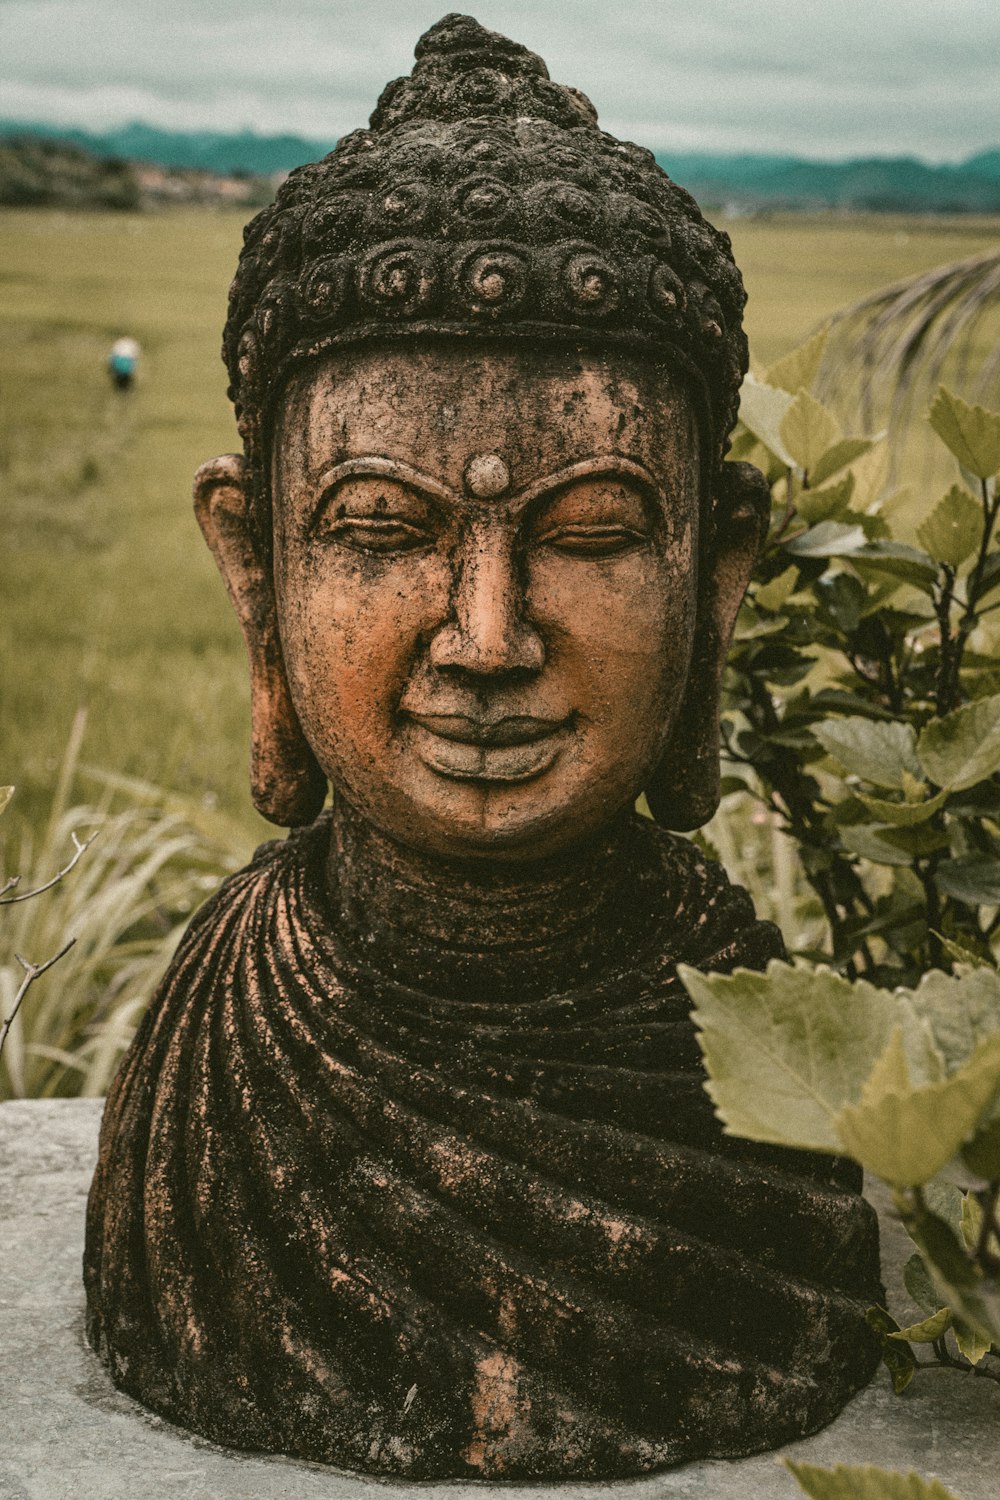 a statue of a buddha in a field